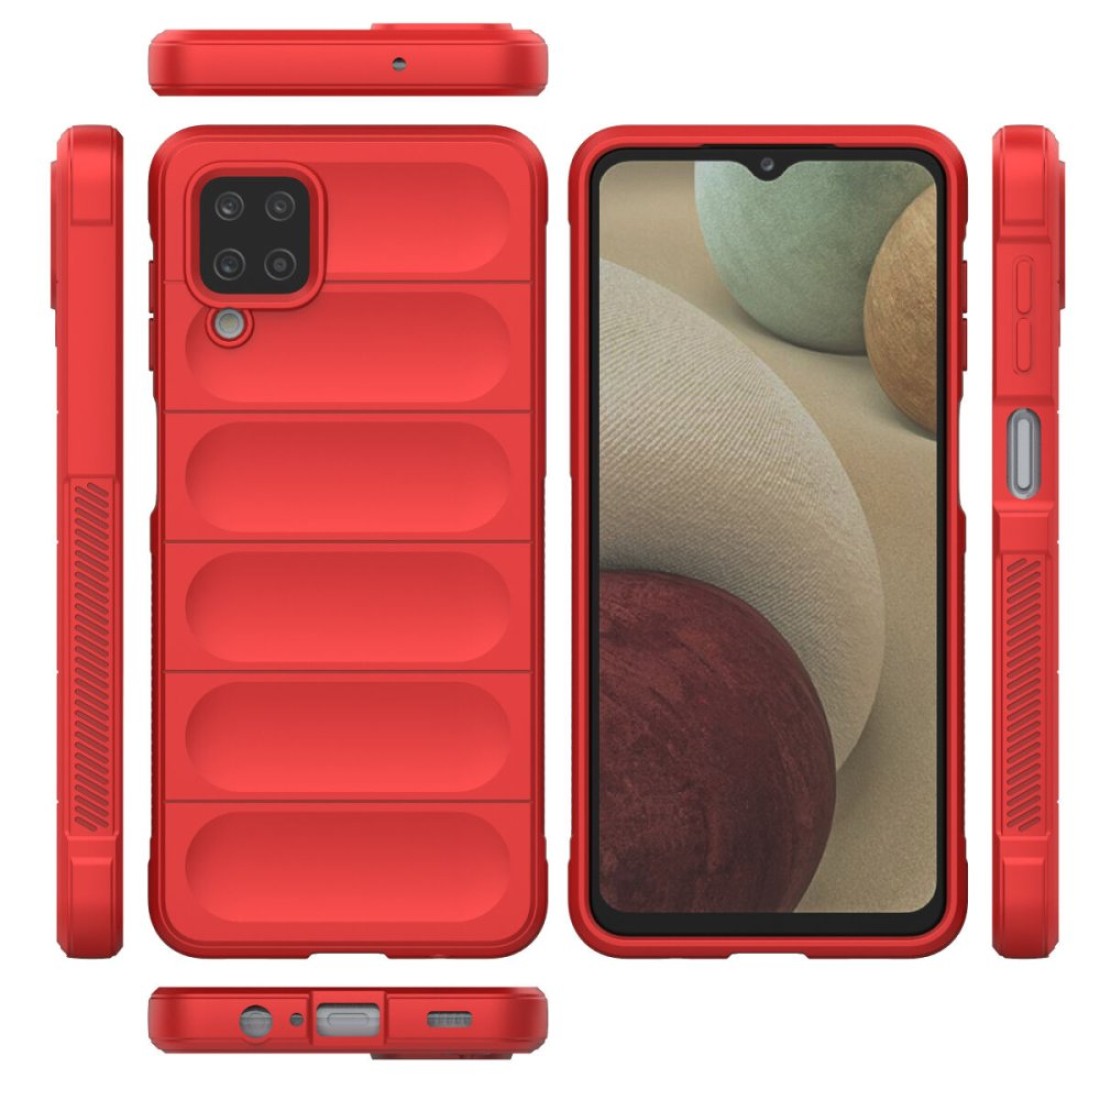 Samsung Galaxy A12 Kılıf Optimum Silikon - Kırmızı